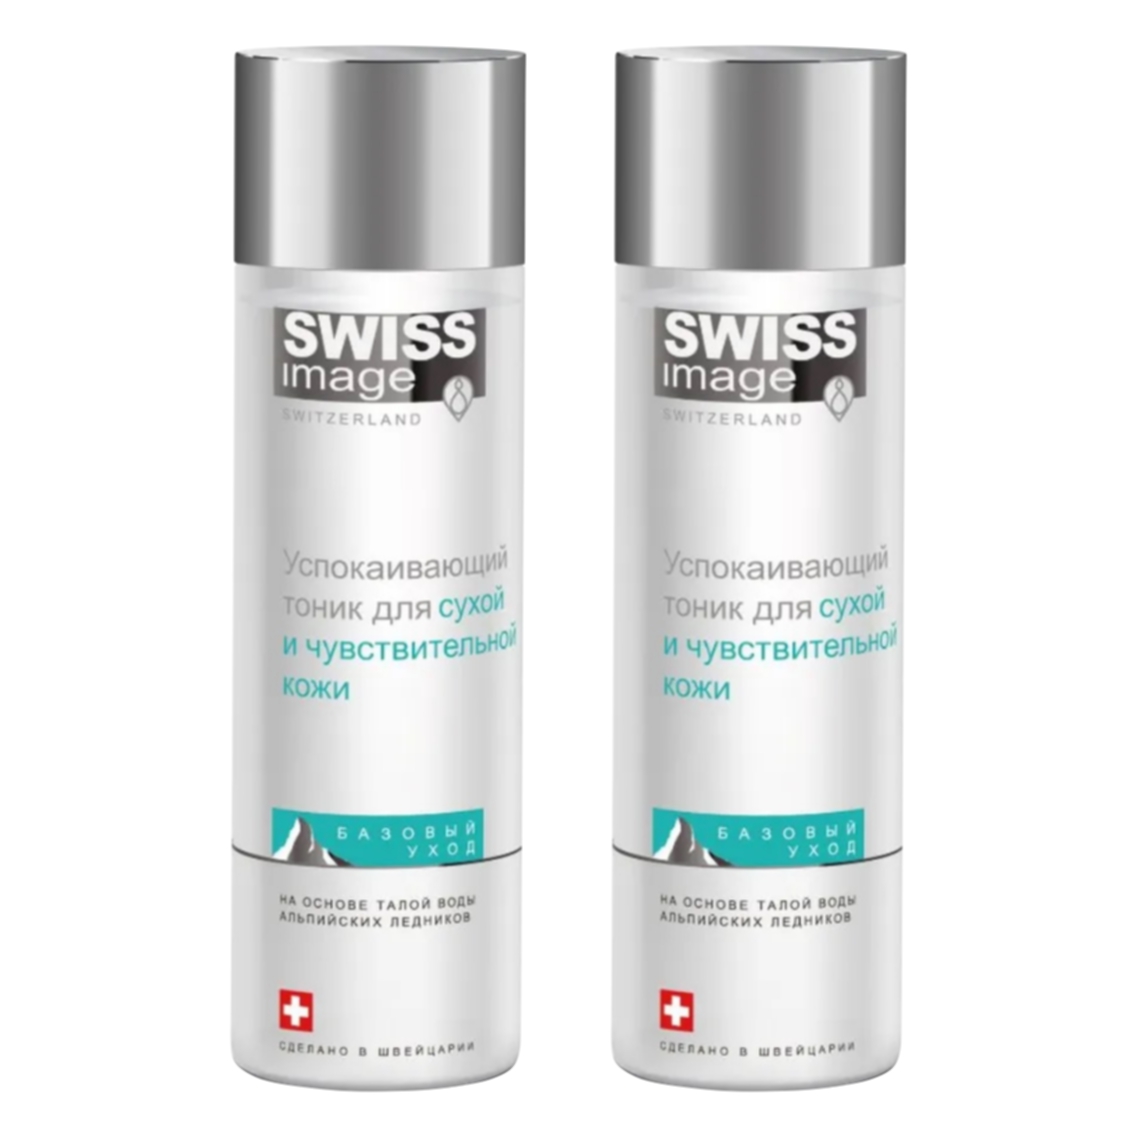 Комплект Тоник для лица Swiss Image Успокаивающий для сухой и чувствительной кожи 200 мл